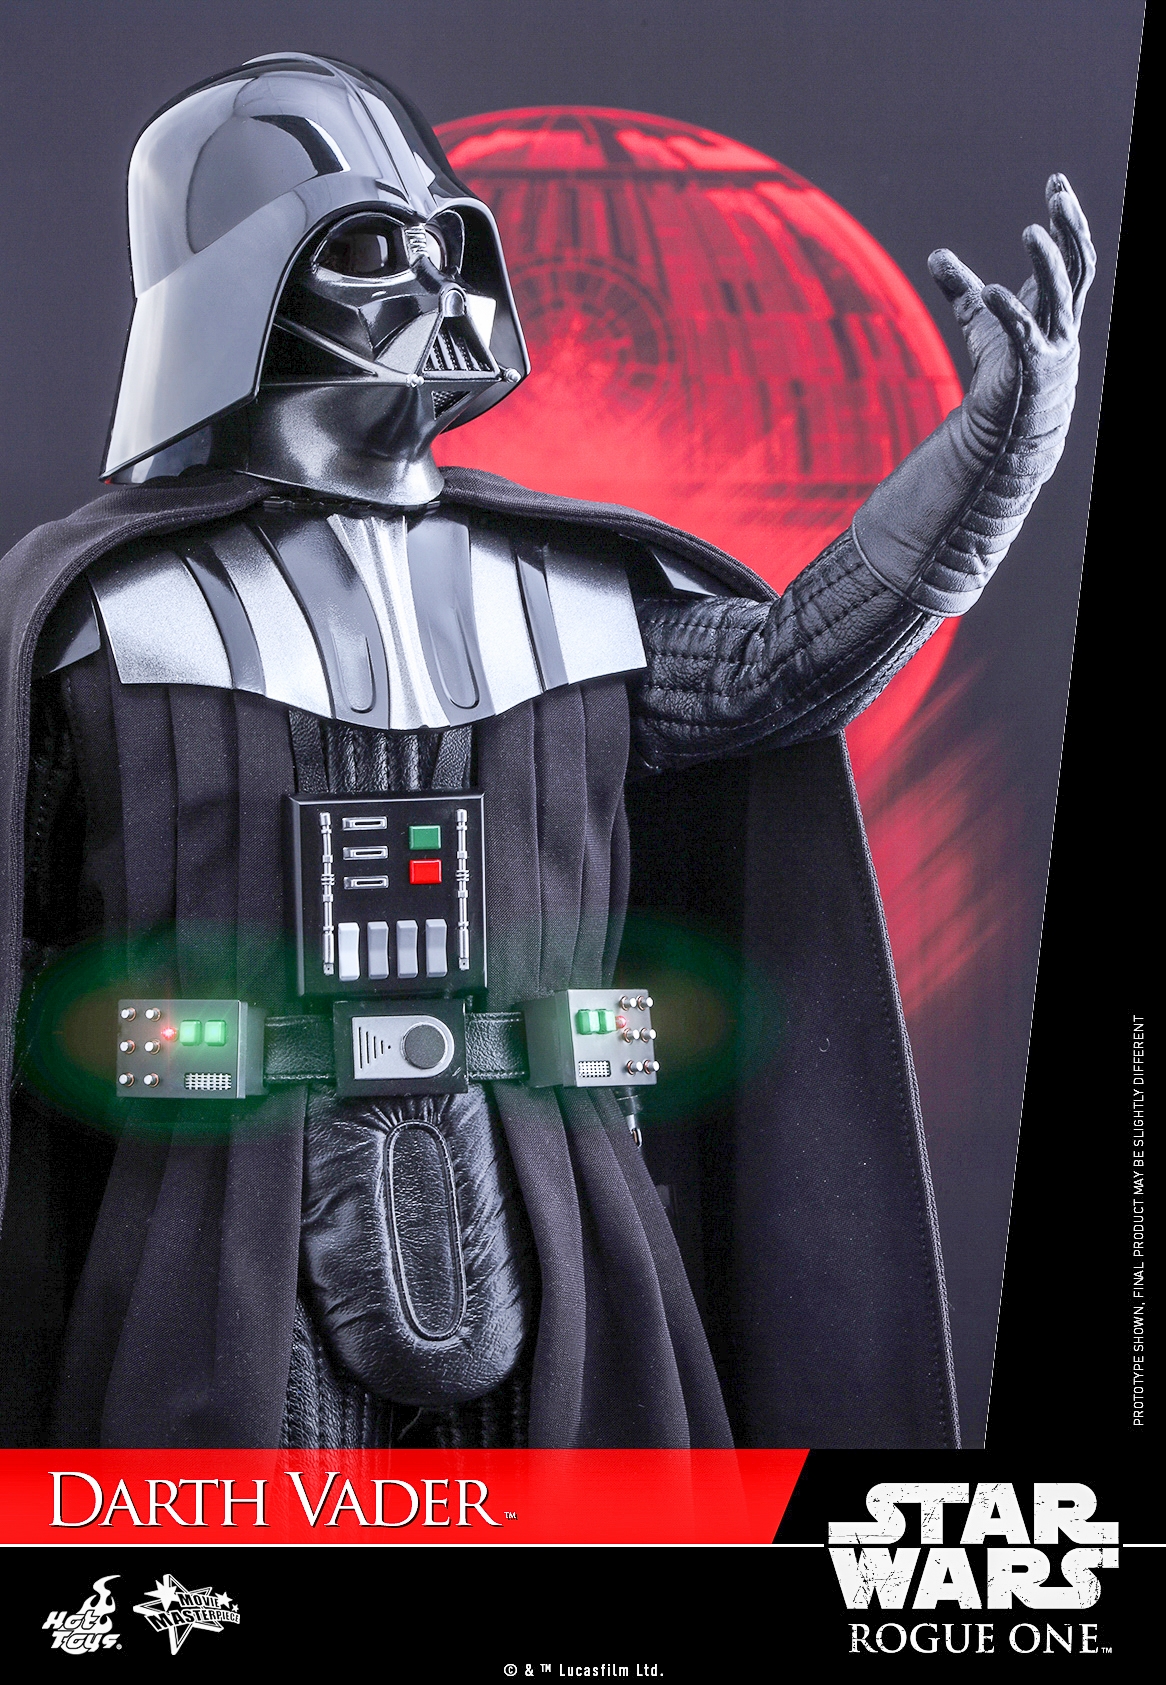 Hot-Toys-MMS388-Rogue-One-Darth-Vader-006.jpg